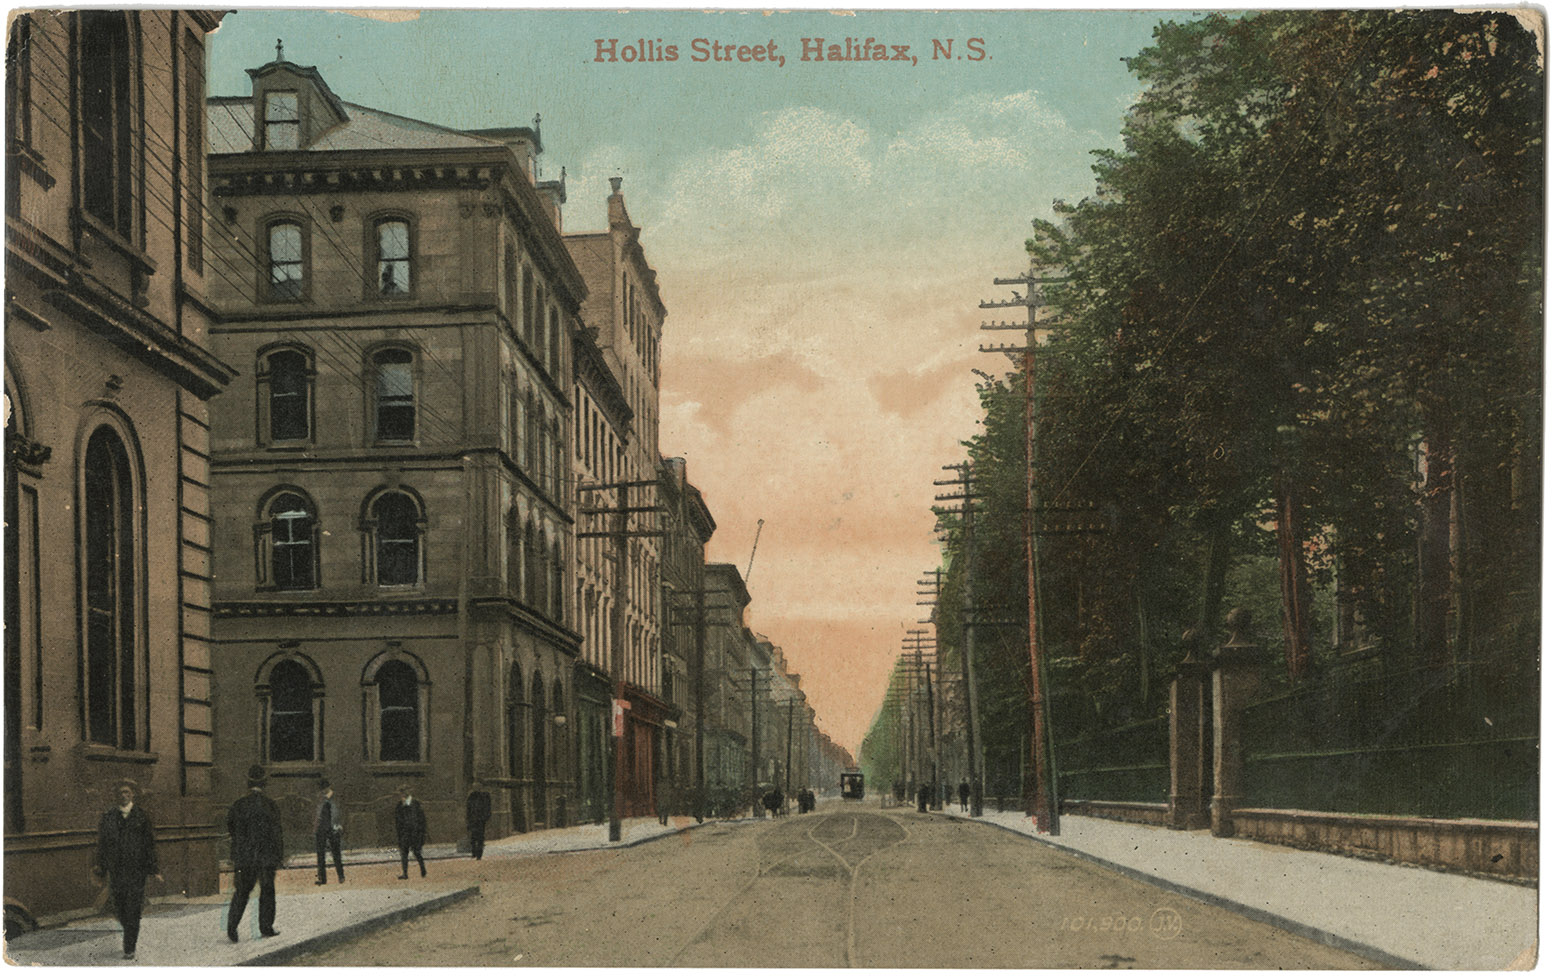 communityalbums - Hollis Street, Halifax, N.S.